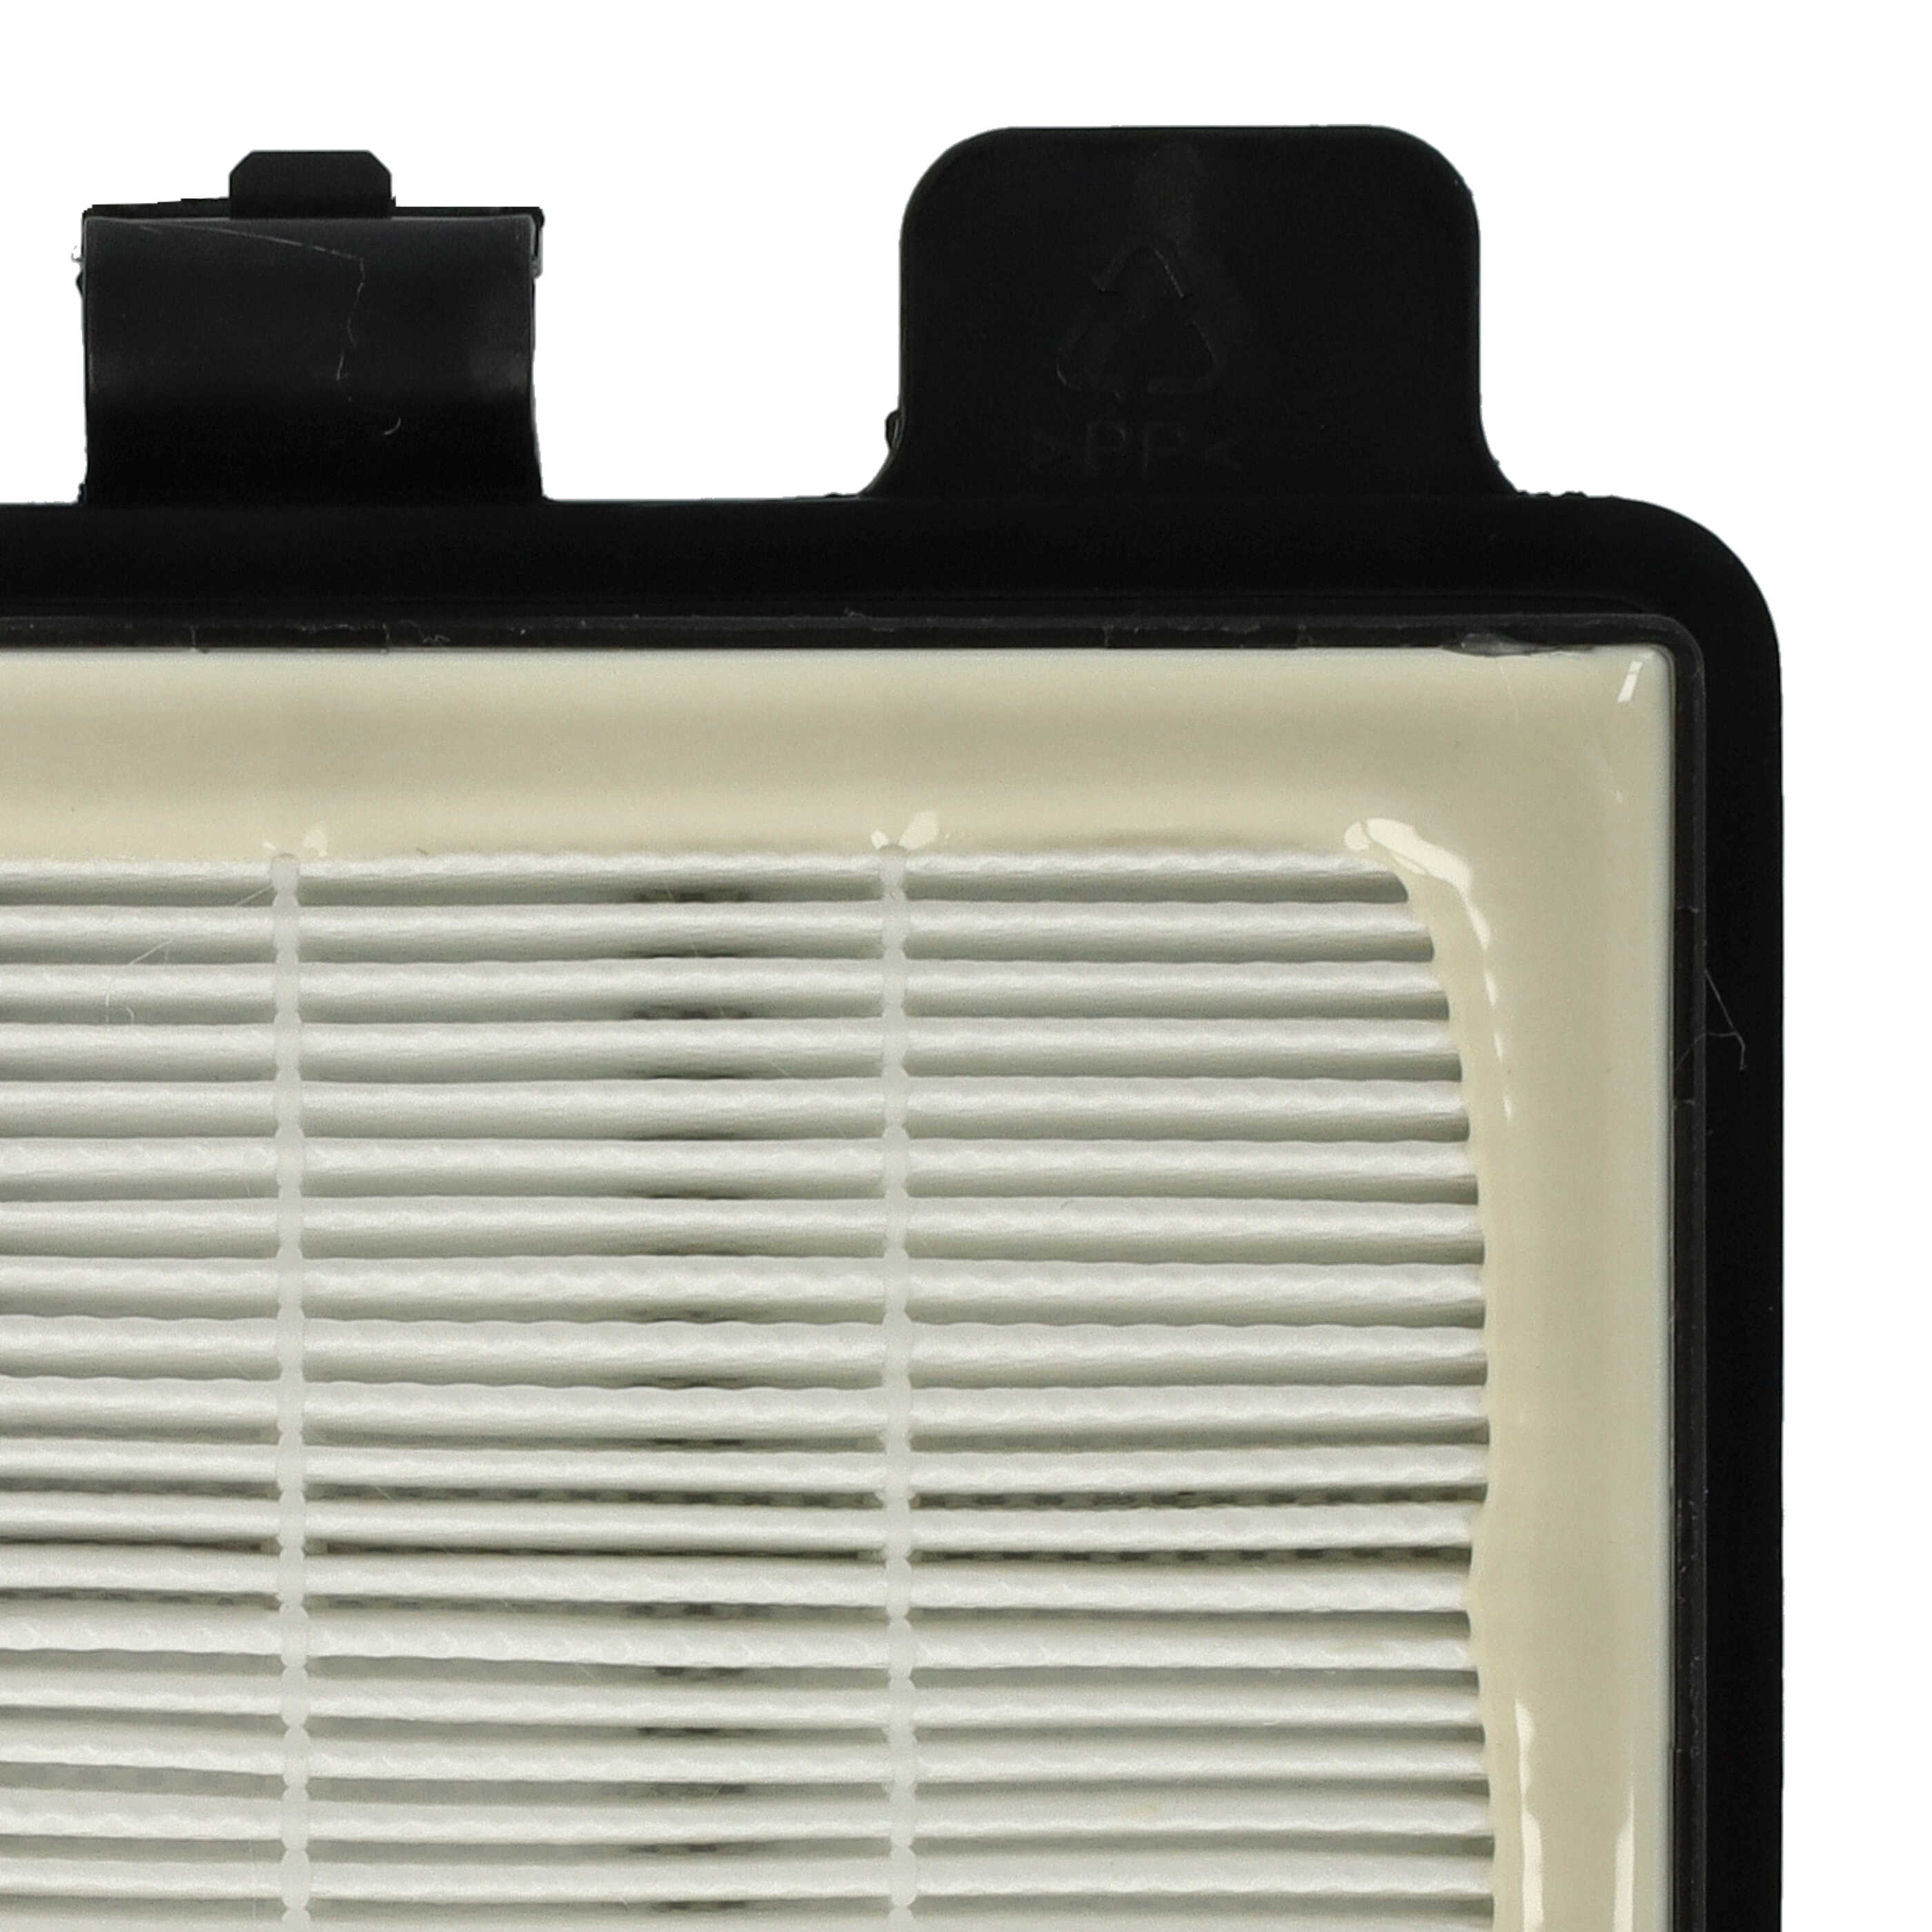 Filtre remplace Ariete AT5185394210, 00P274100AR0, 00P274110AR0 pour aspirateur - filtre HEPA